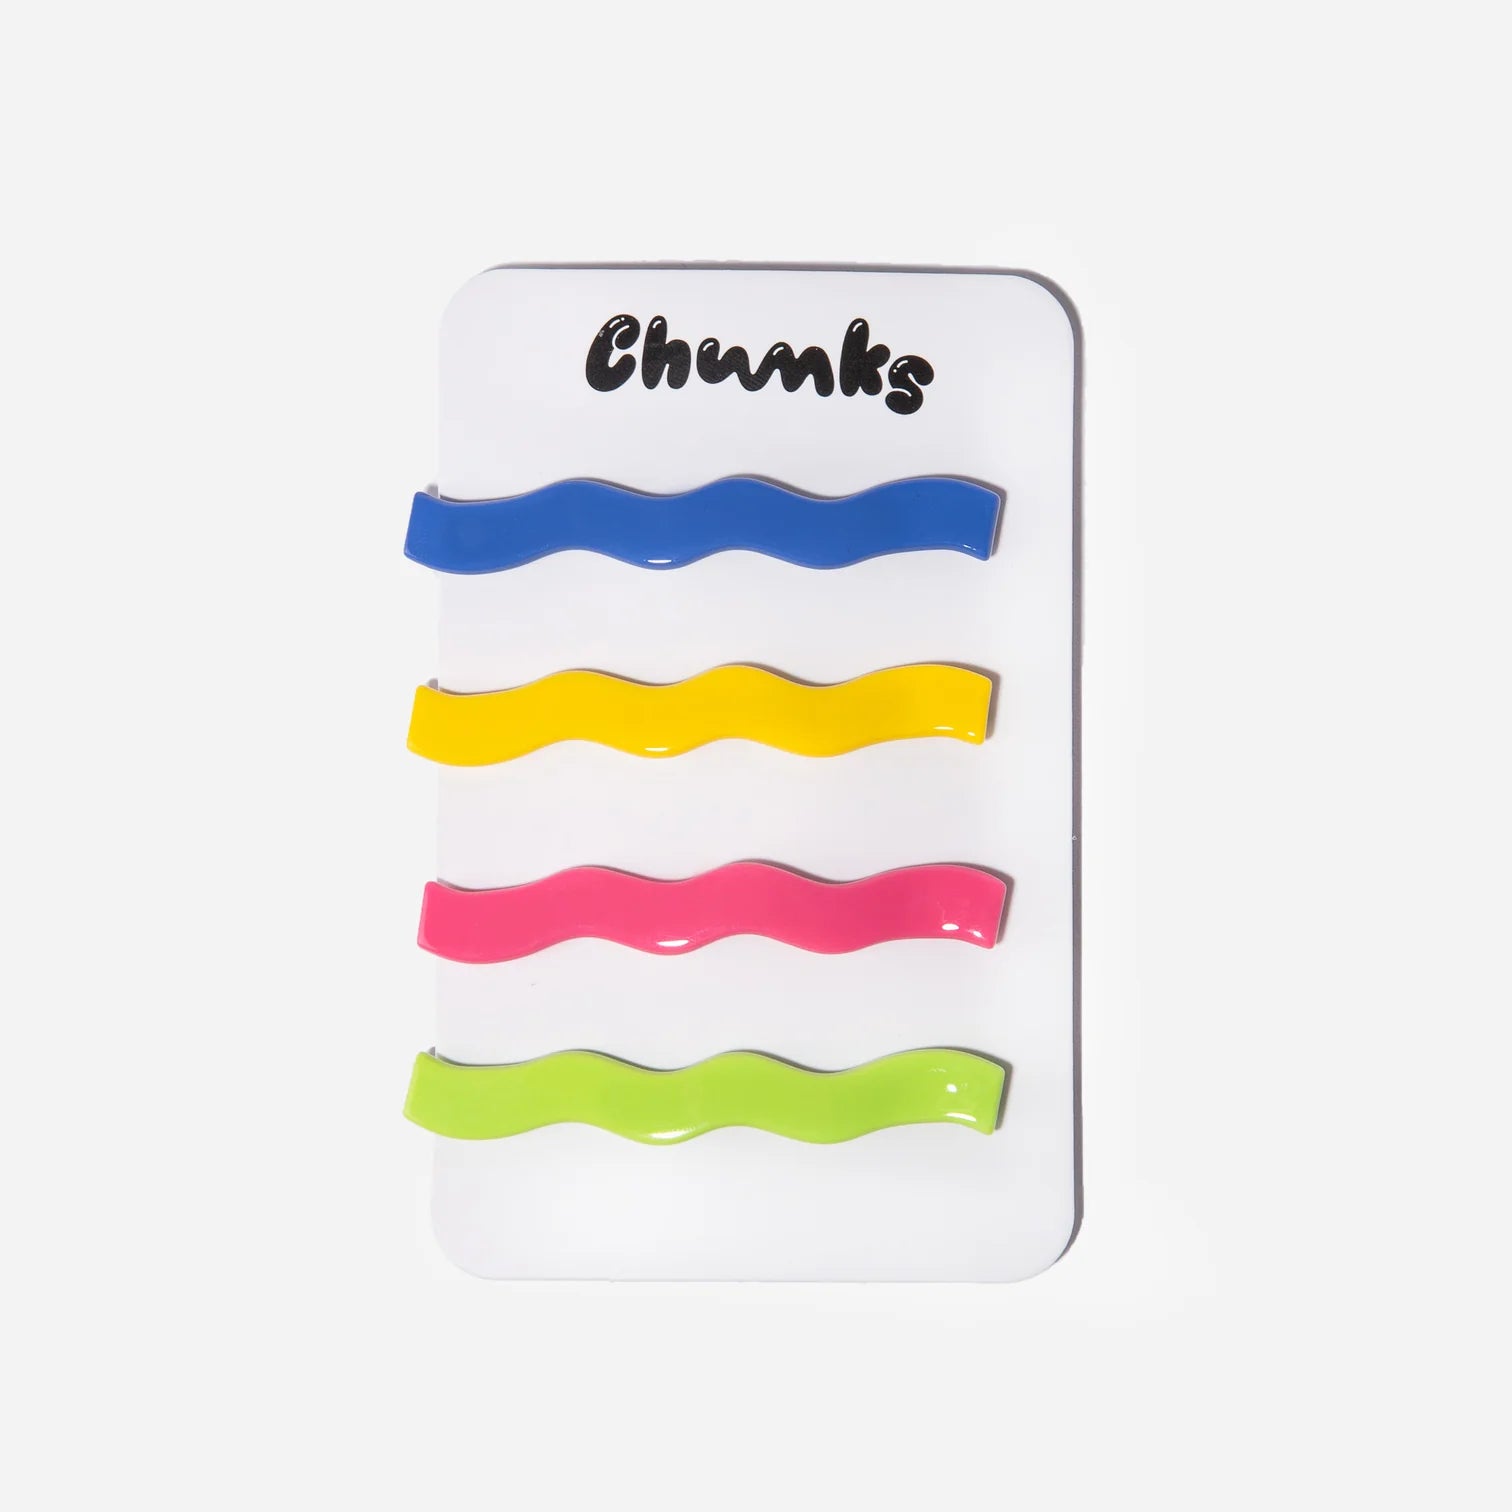 Chunks - Shannon’s Slides